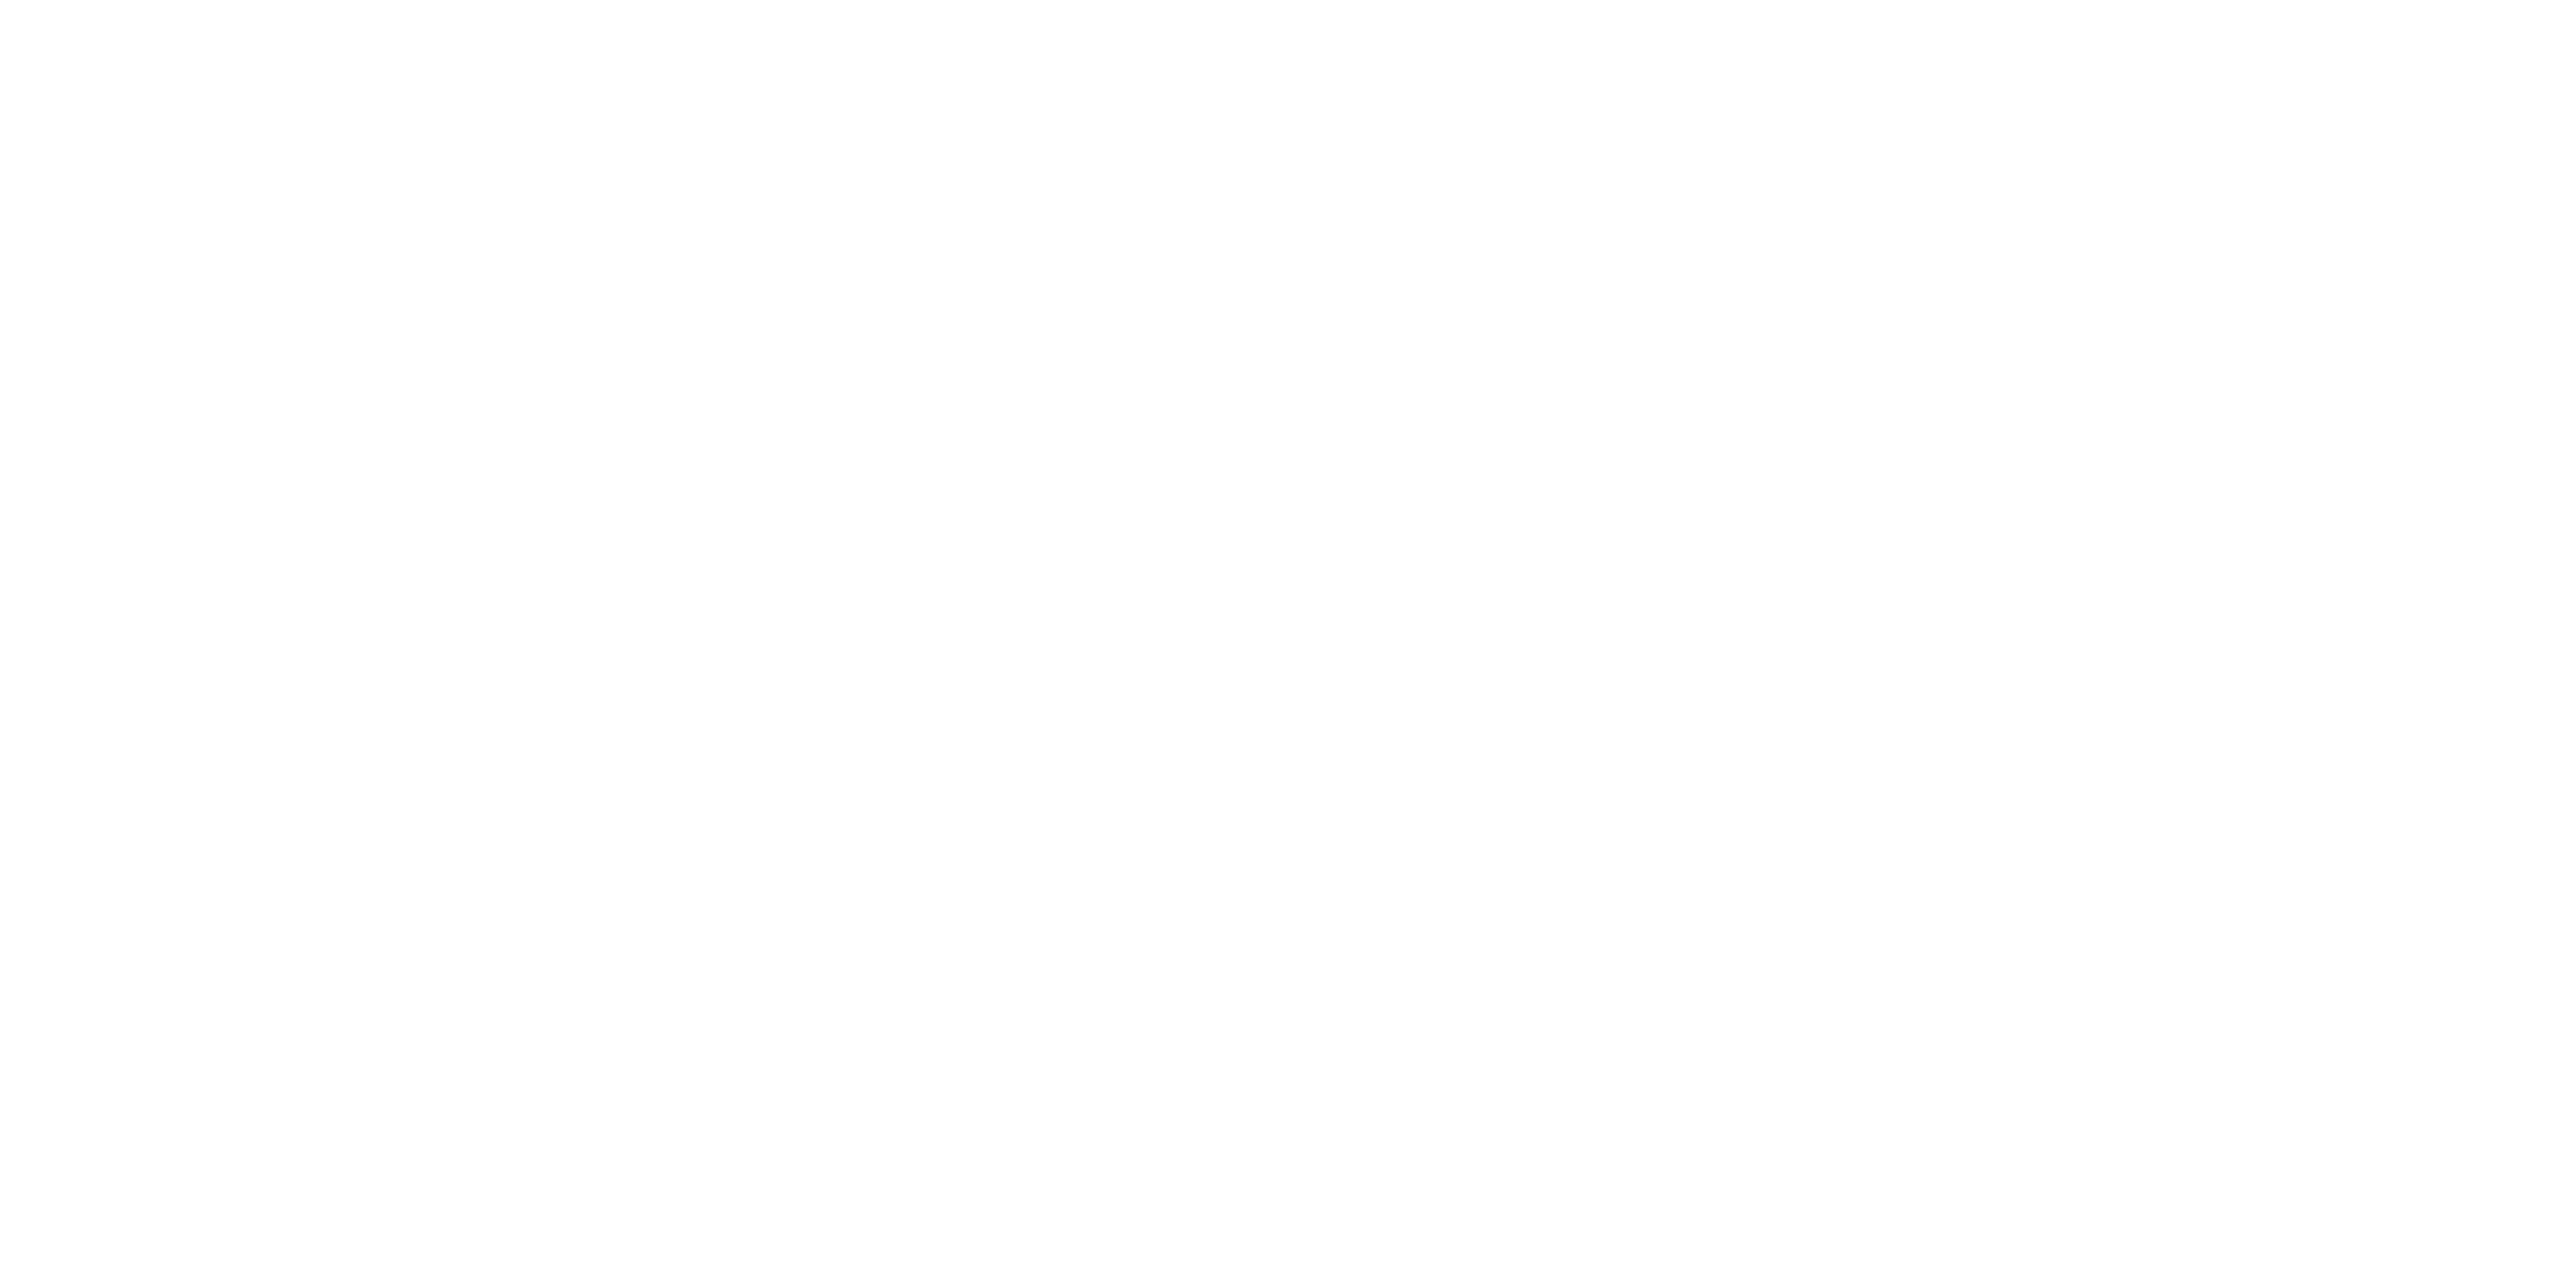 Ricky Andrade